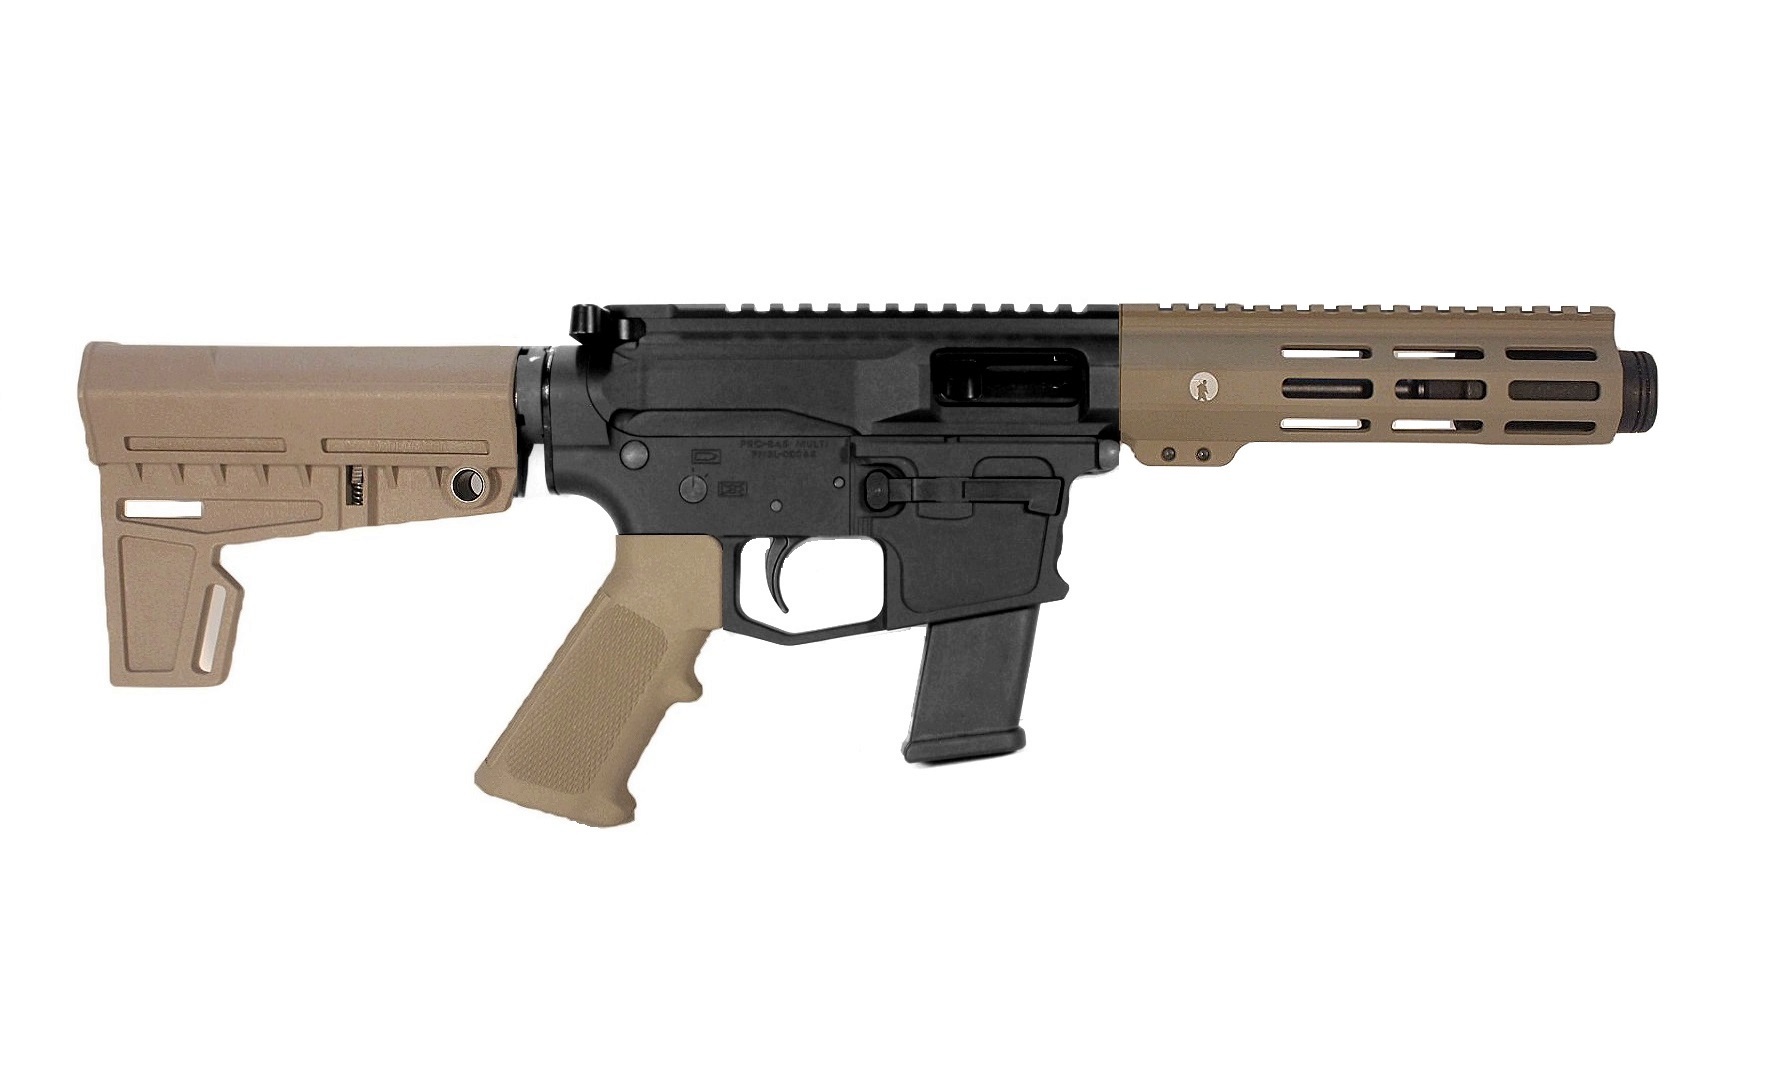 5 inch 40 S&W PCC Pistol in BLK/FDE